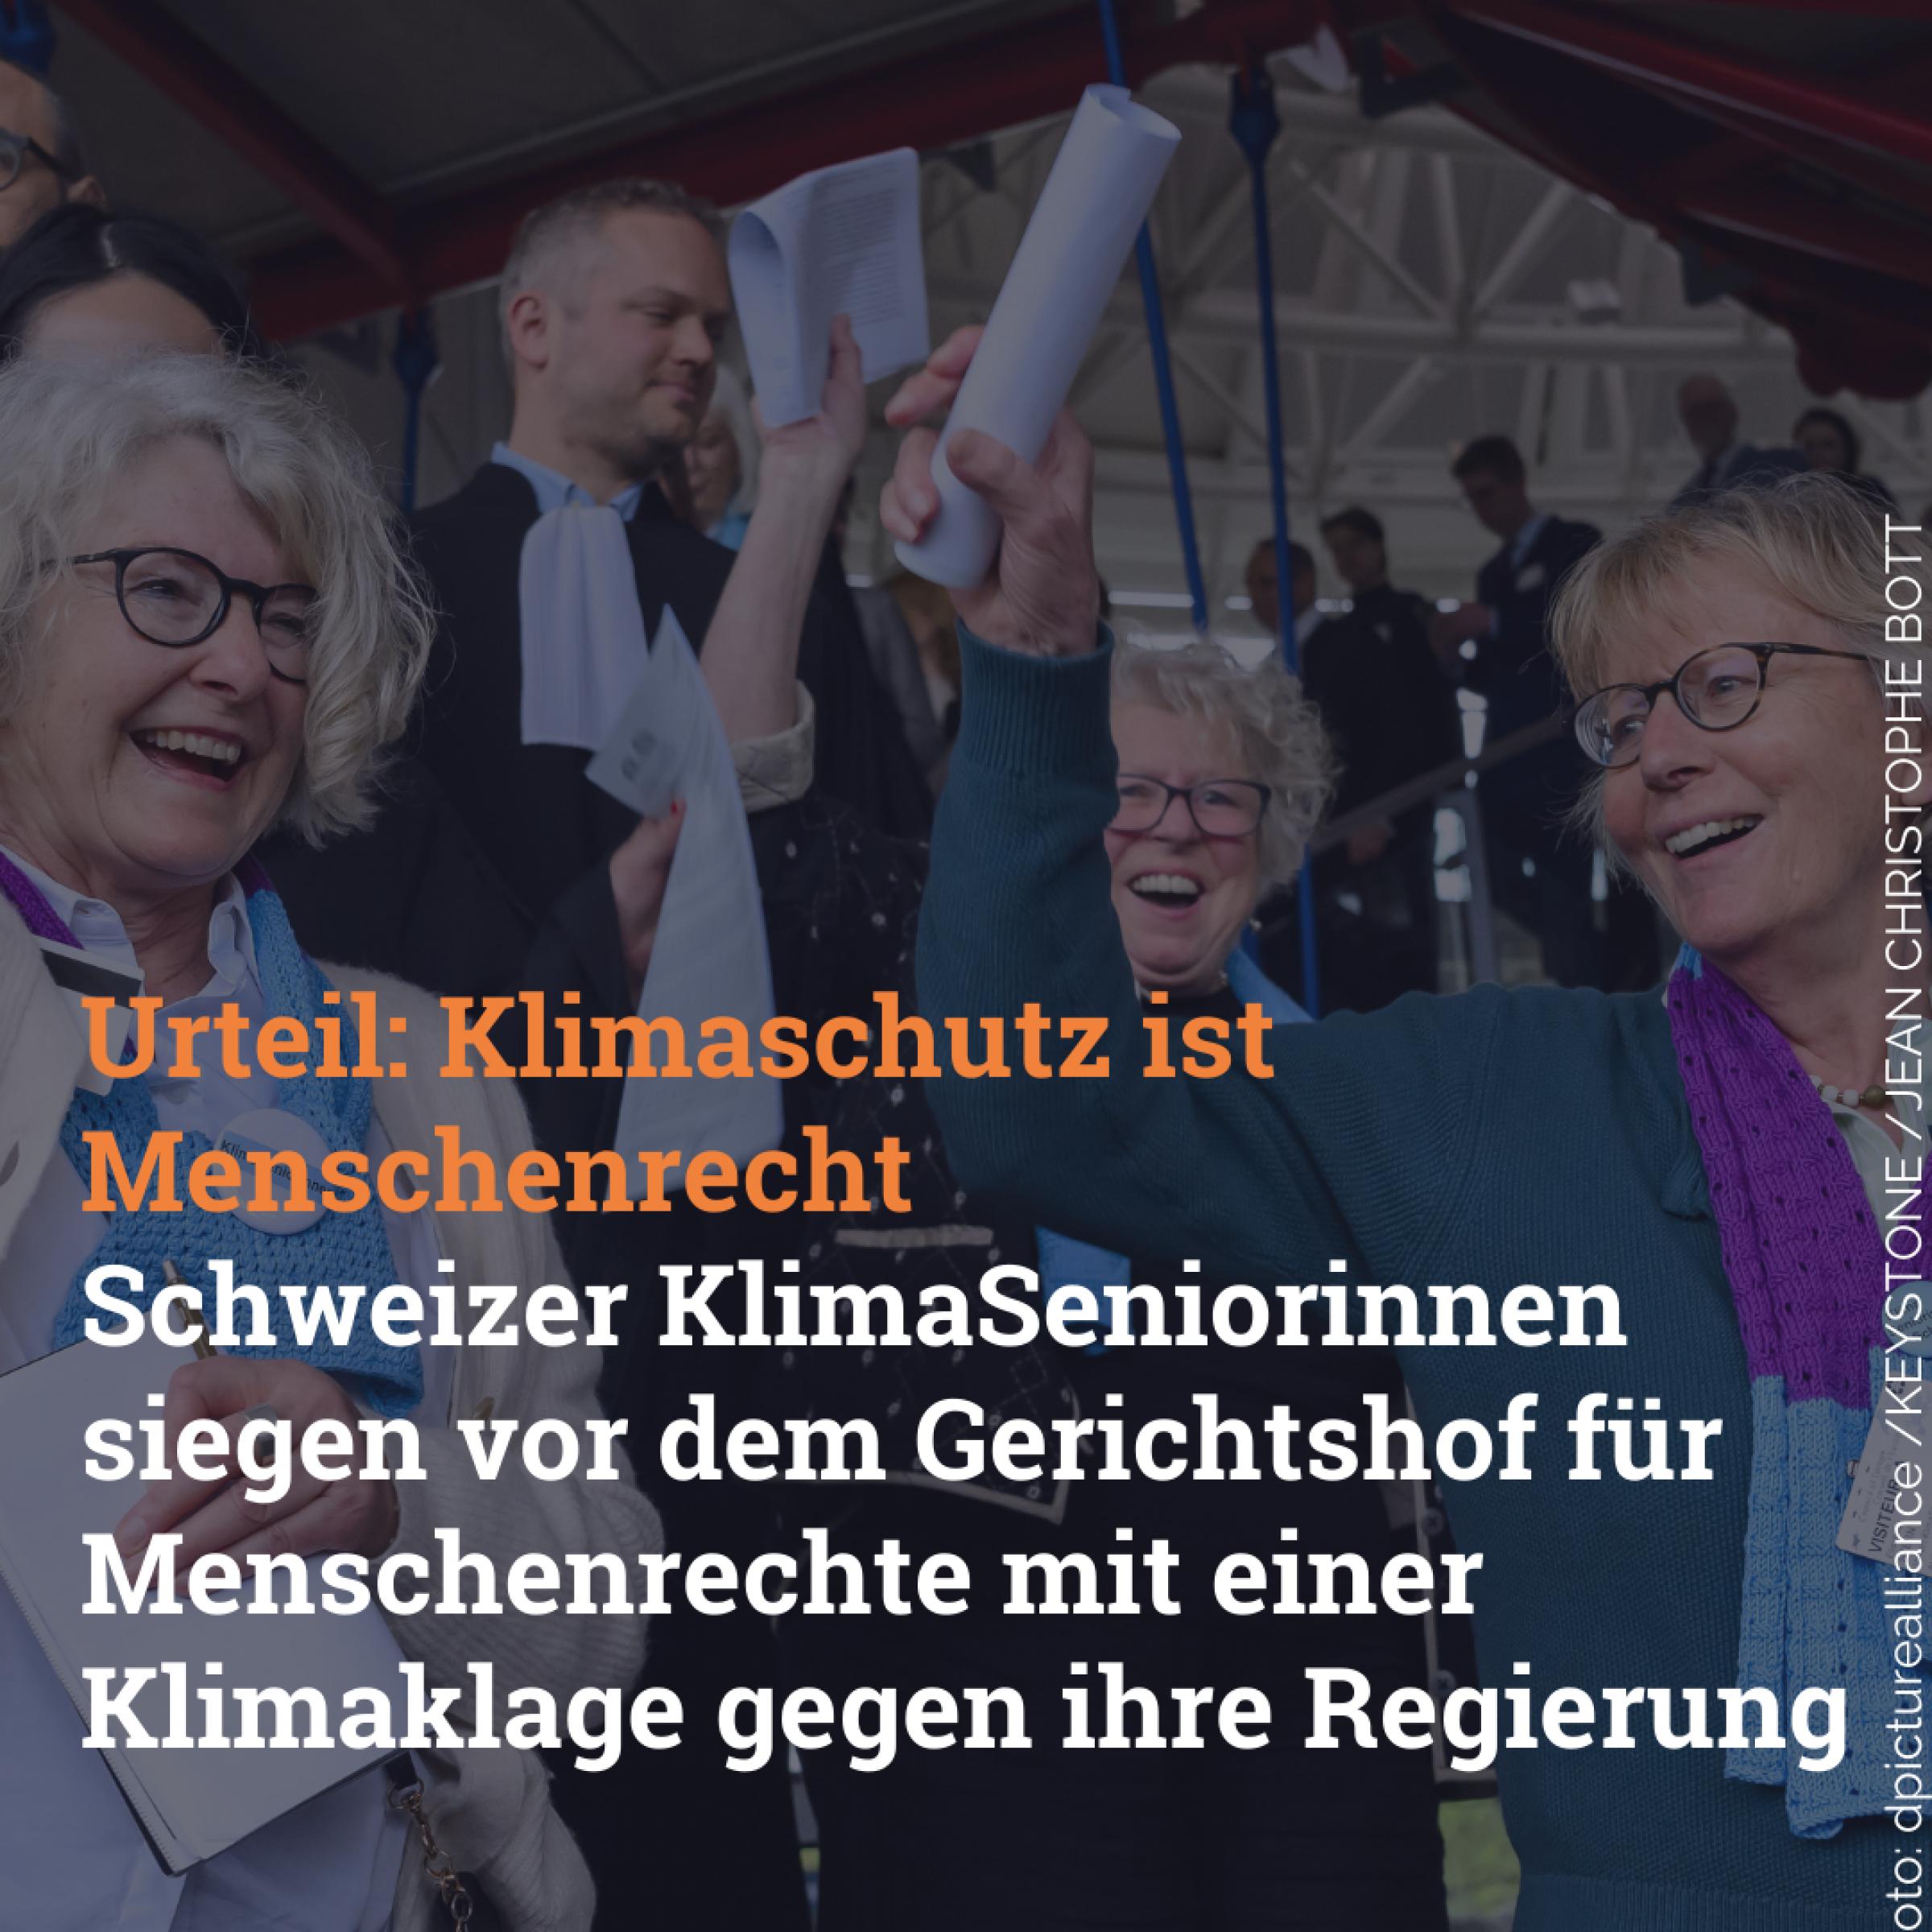 Die Schweizer KlimaSeniorinnen jubeln, denn sie haben vor dem Gerichtshif für Menschenrechte gesiegt.